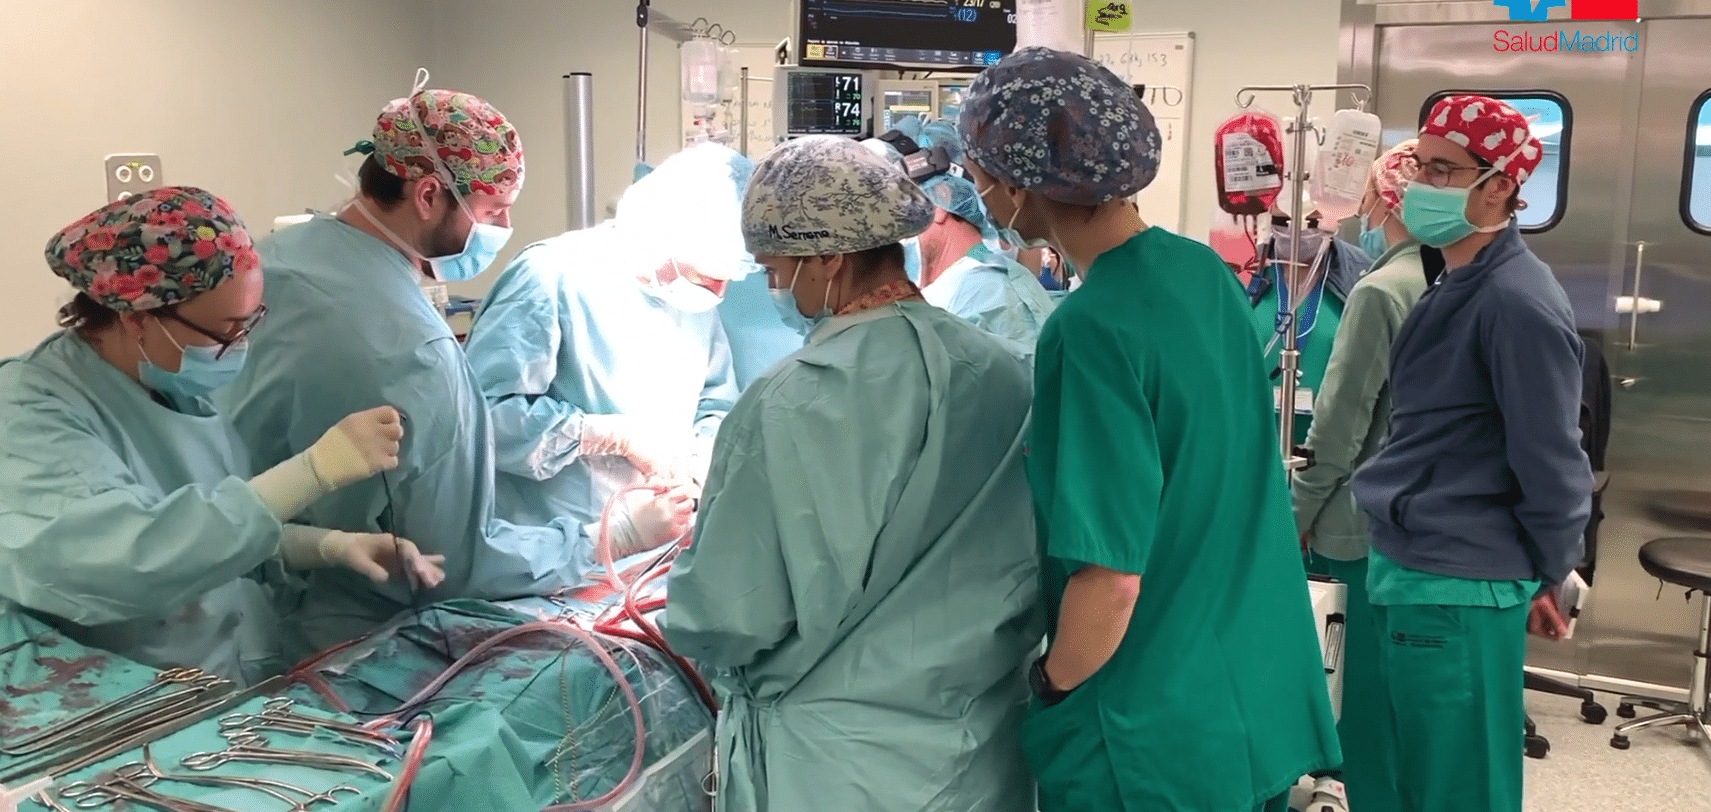 El Puerta de Hierro supera los 1.000 trasplantes de corazón, pulmón e hígado